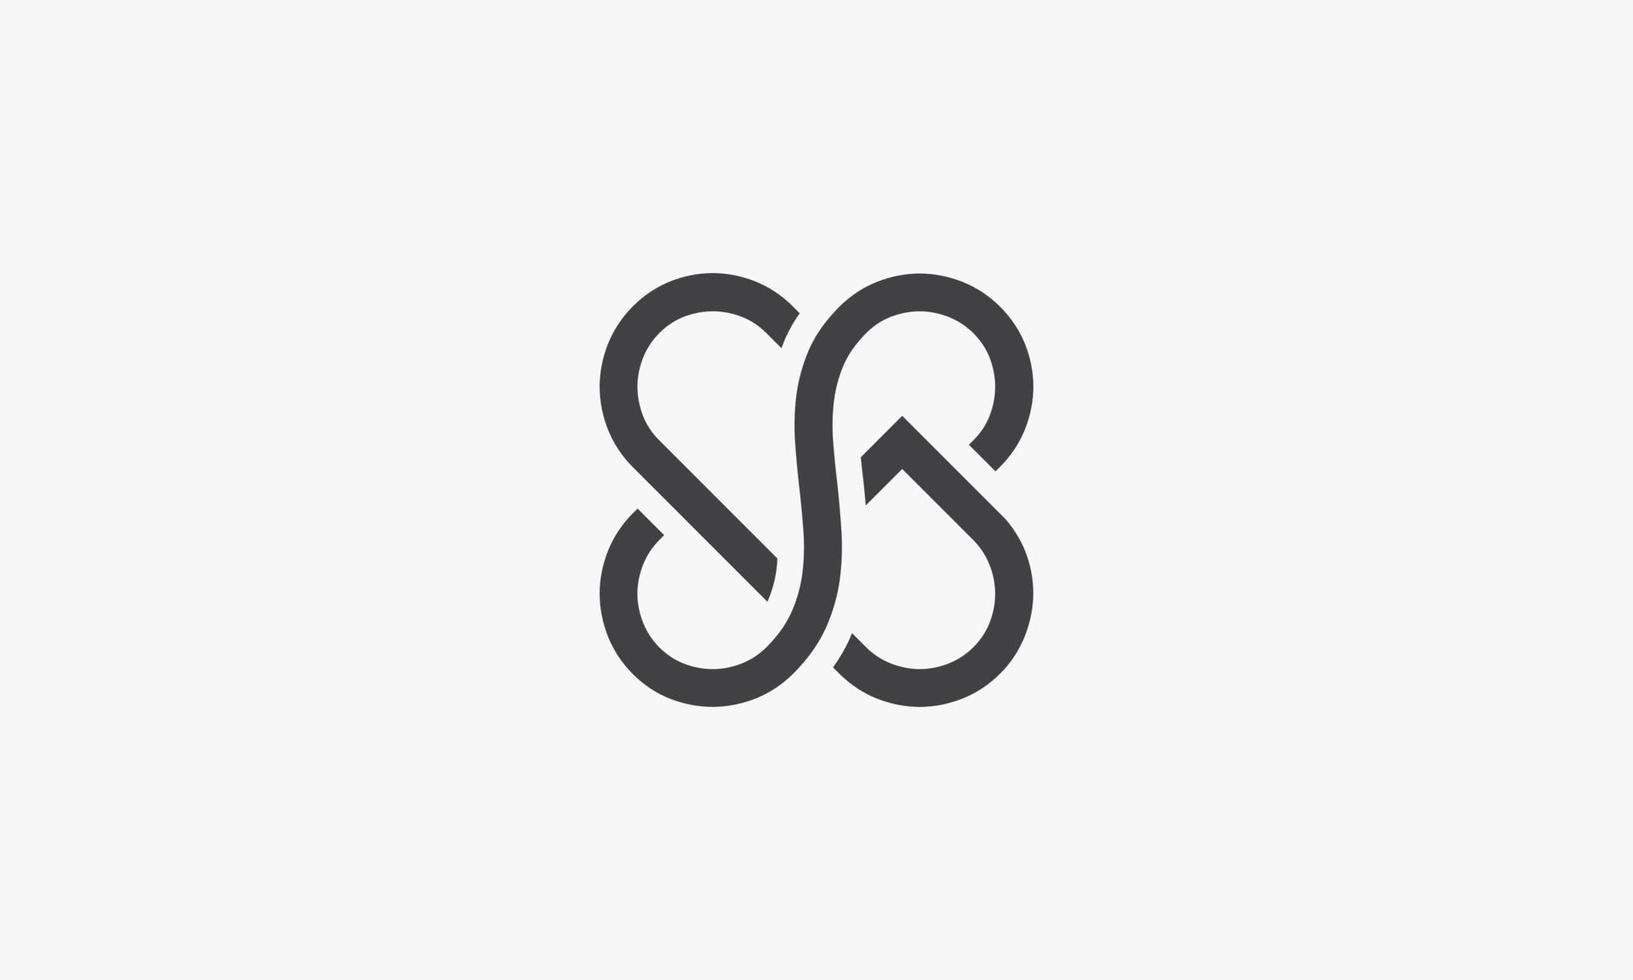 sg- oder gs-Logo. isoliert auf weißem Hintergrund. vektor